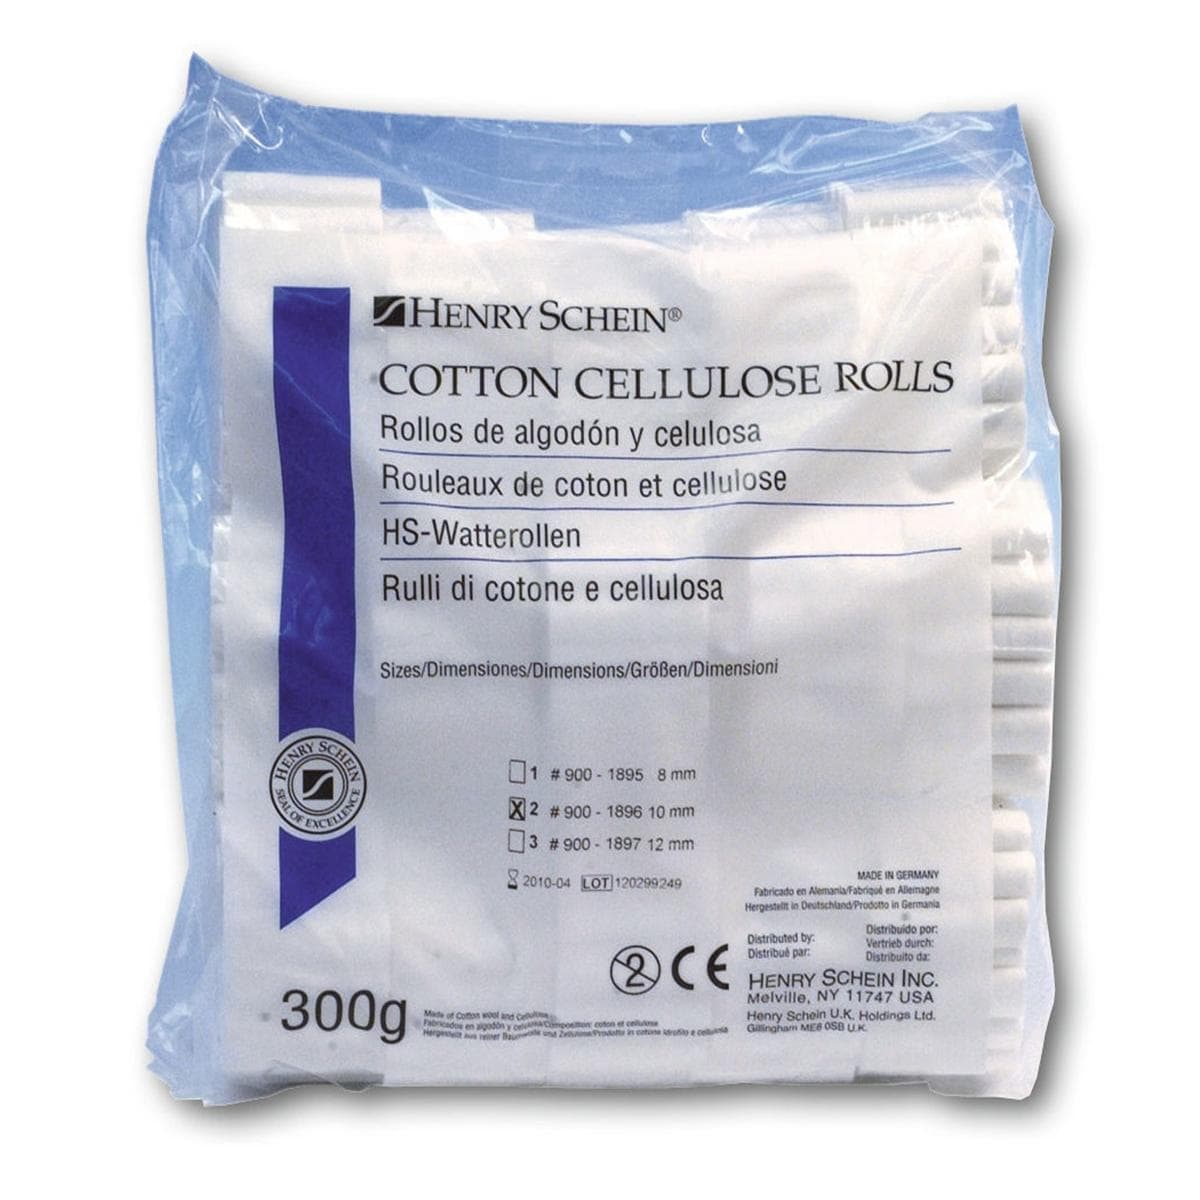 HS-Watterollen, Cotton Cellulose Rolls - Größe 1, Ø 8 mm, Packung 300 g